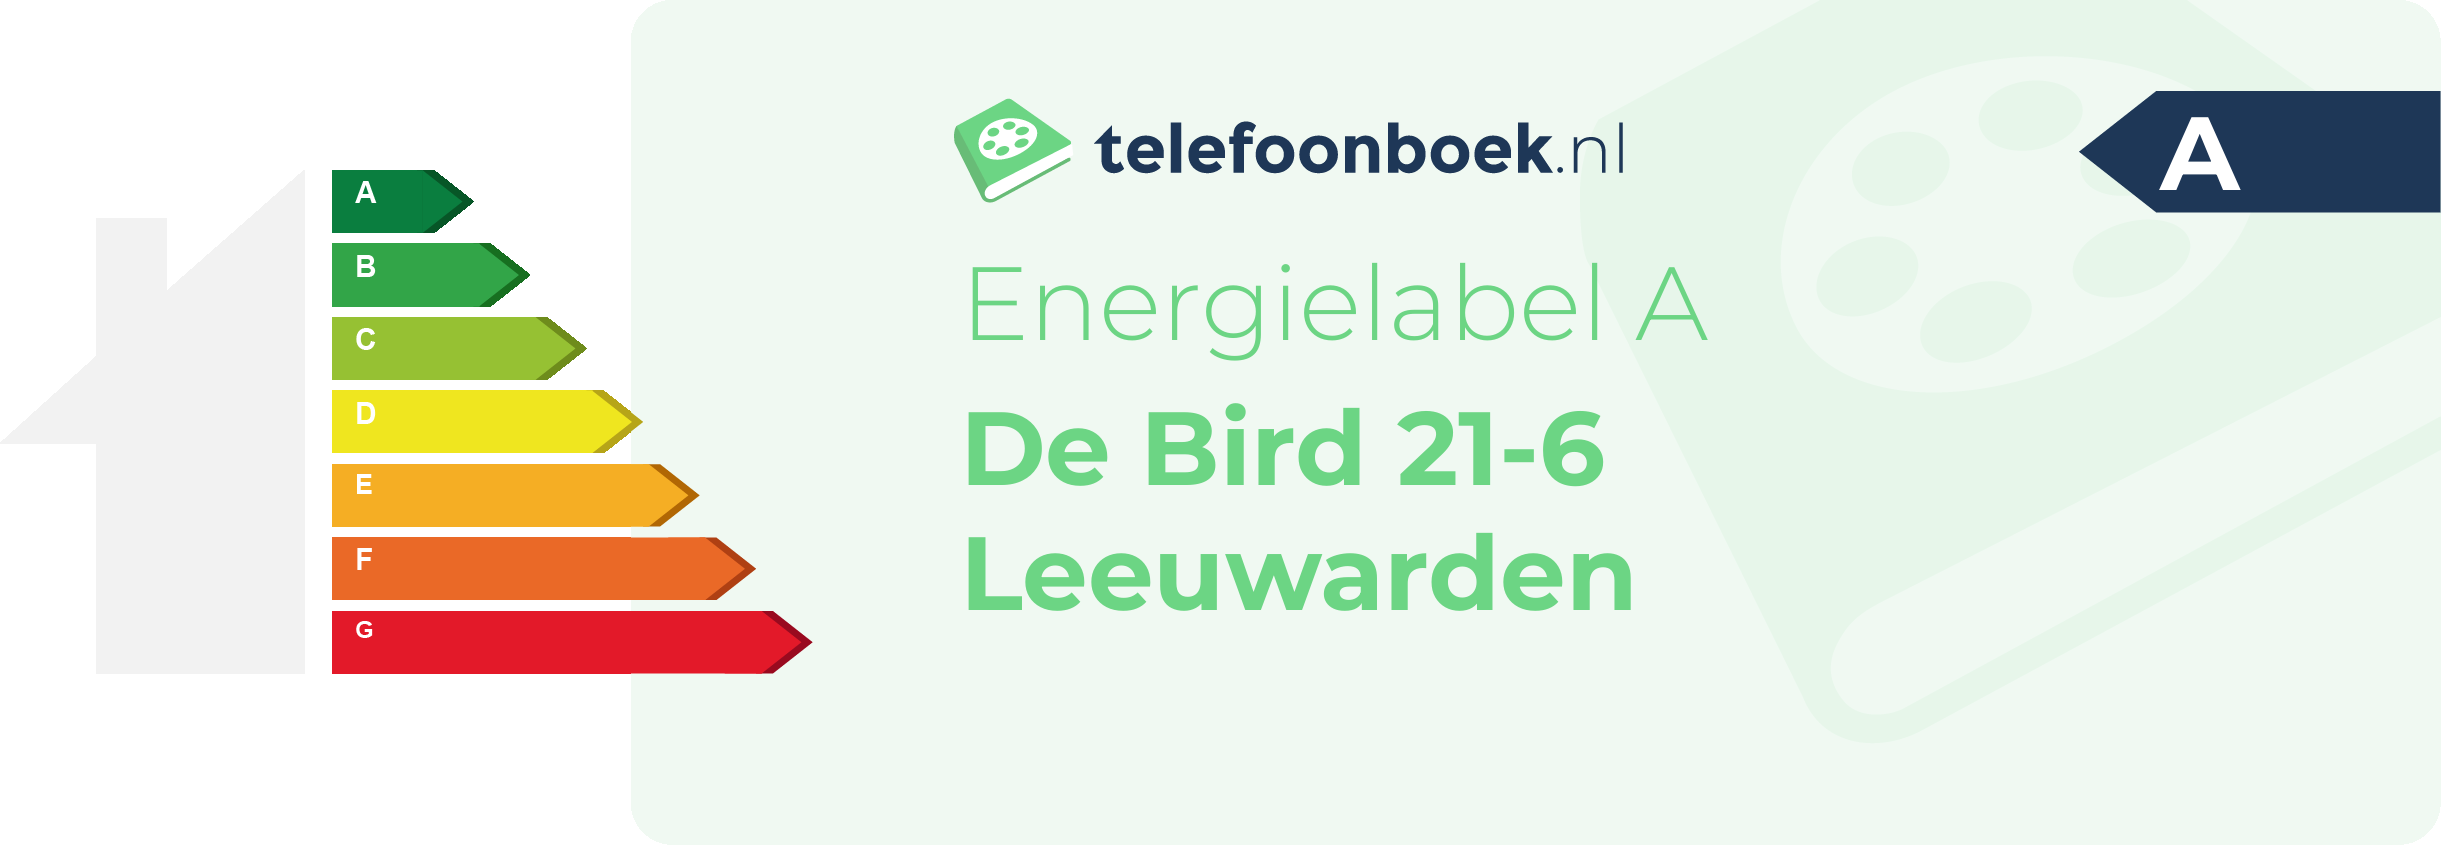 Energielabel De Bird 21-6 Leeuwarden